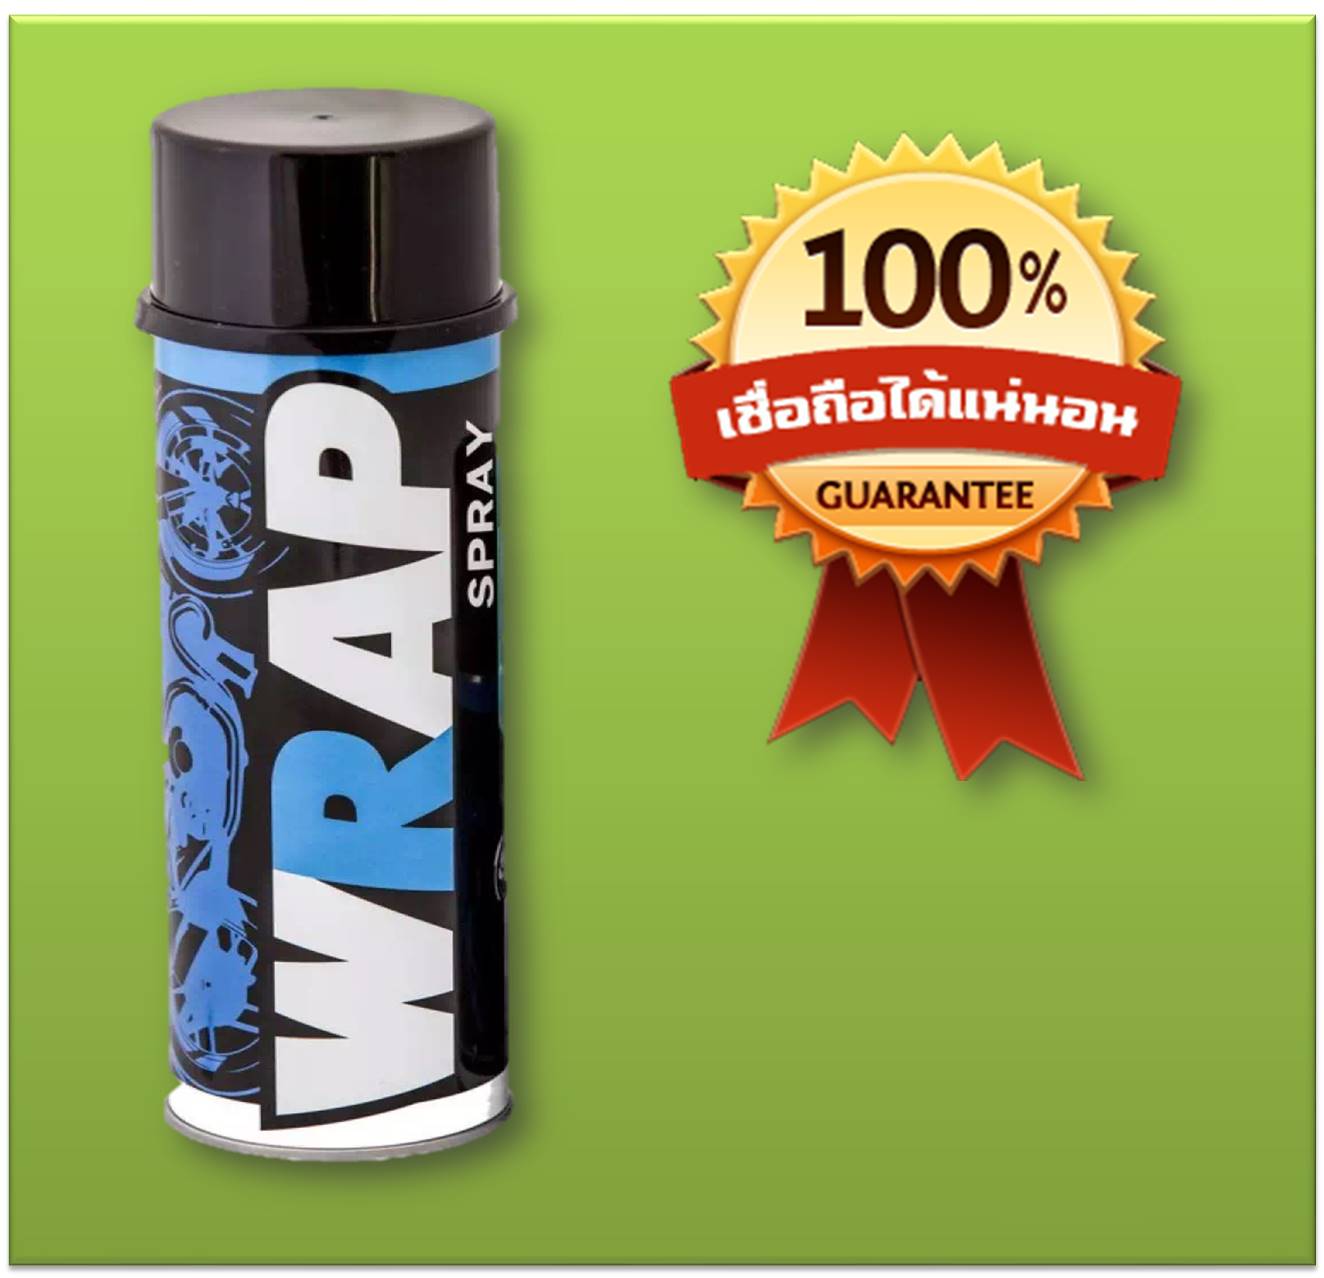 Wrap mini Spray สเปรย์หล่อลื่นโซ่ สีใส ขนาดพกพา 200 ml. เหมาะสำหรับ Bigbike โดยเฉพาะ (บิ๊กไบค์/รถมอไซค์/จักรยาน)